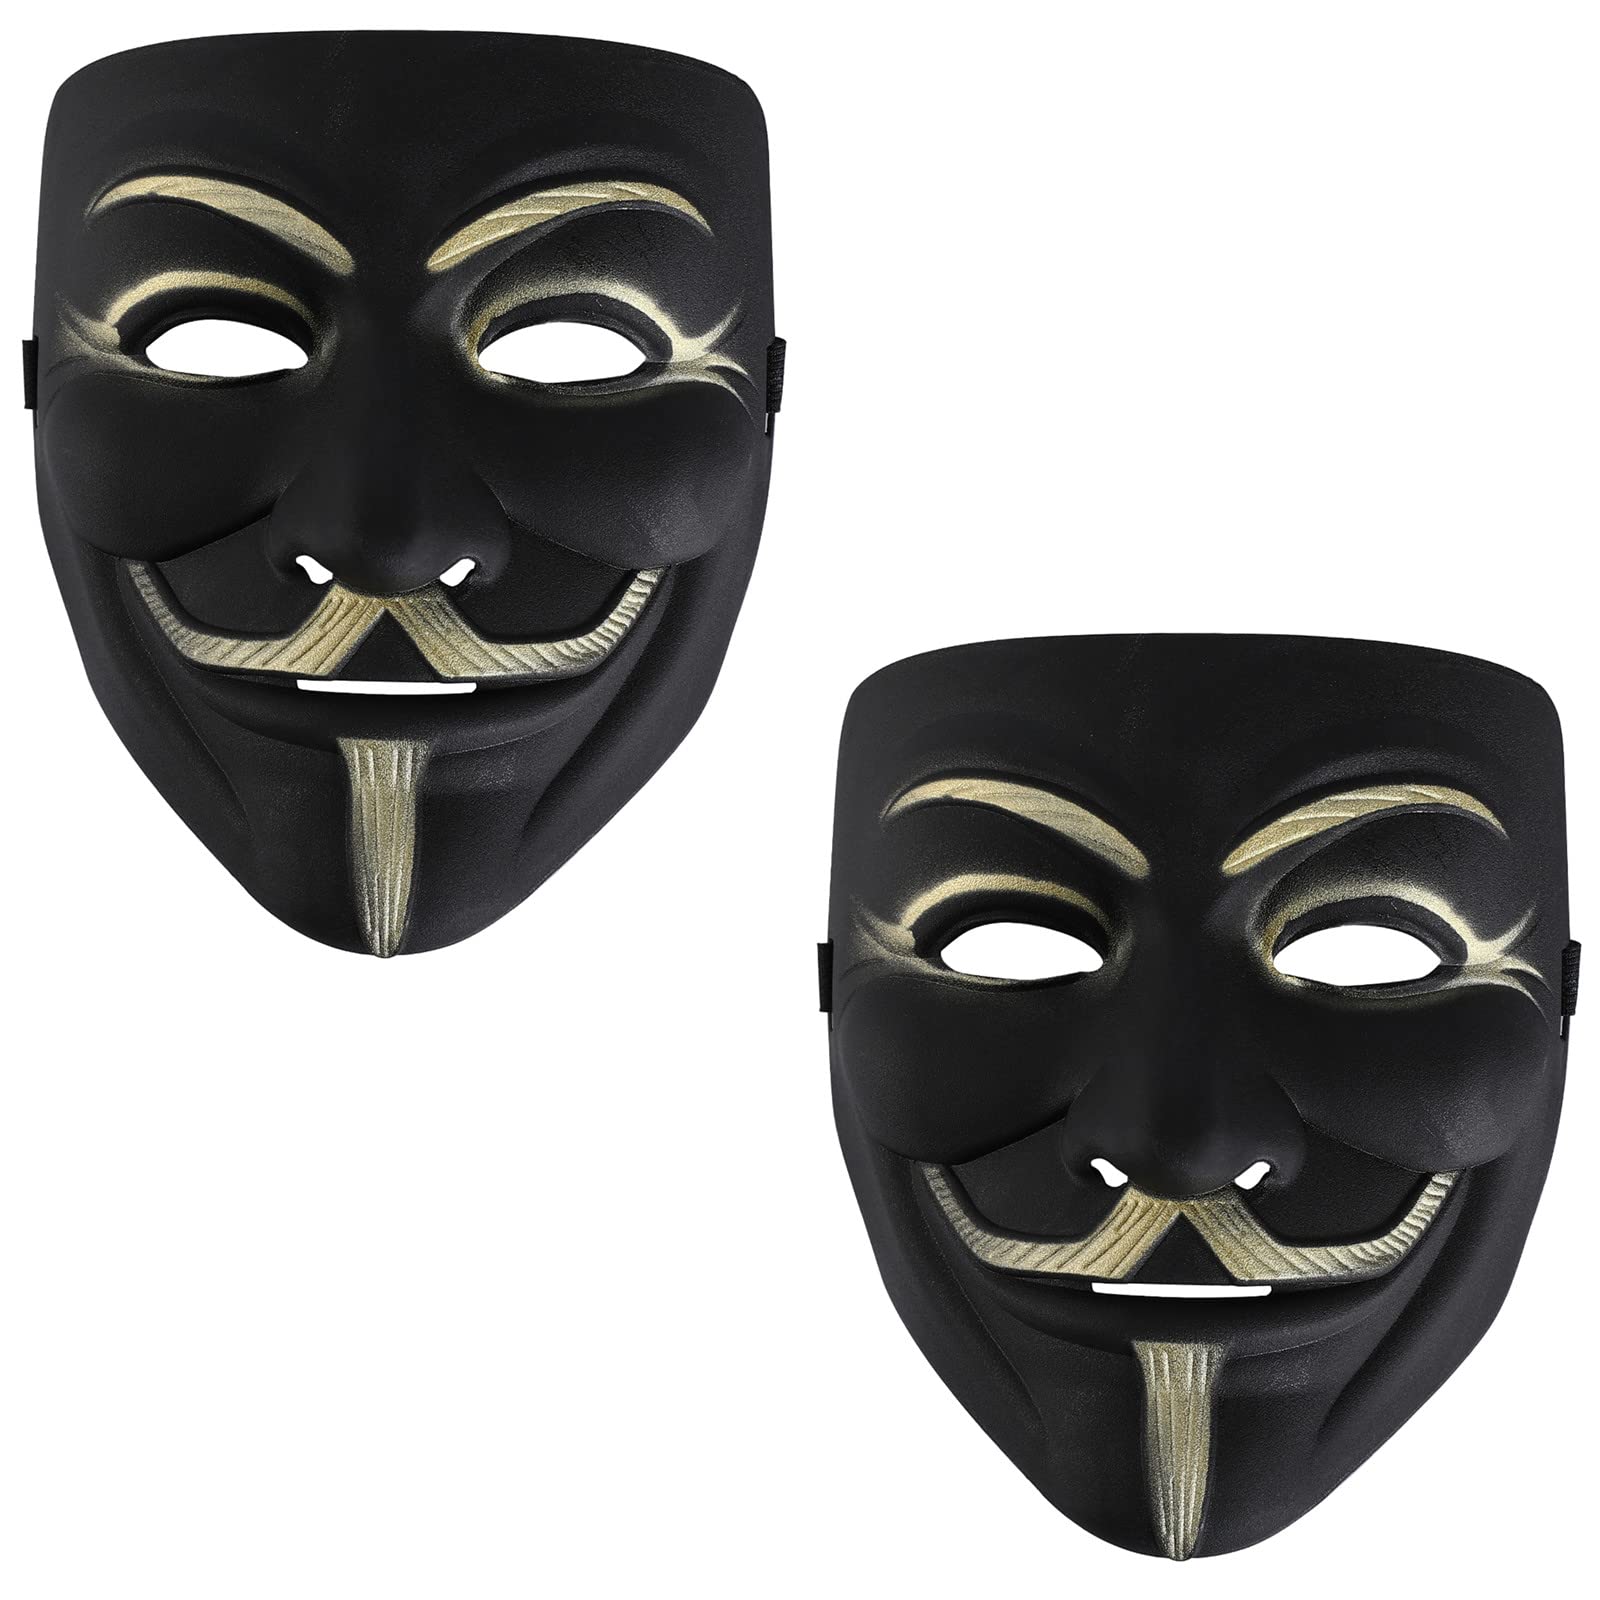 RUSVNO Hacker Mask for Kids Anonymous V for Vendetta Mask,White,2 Pack